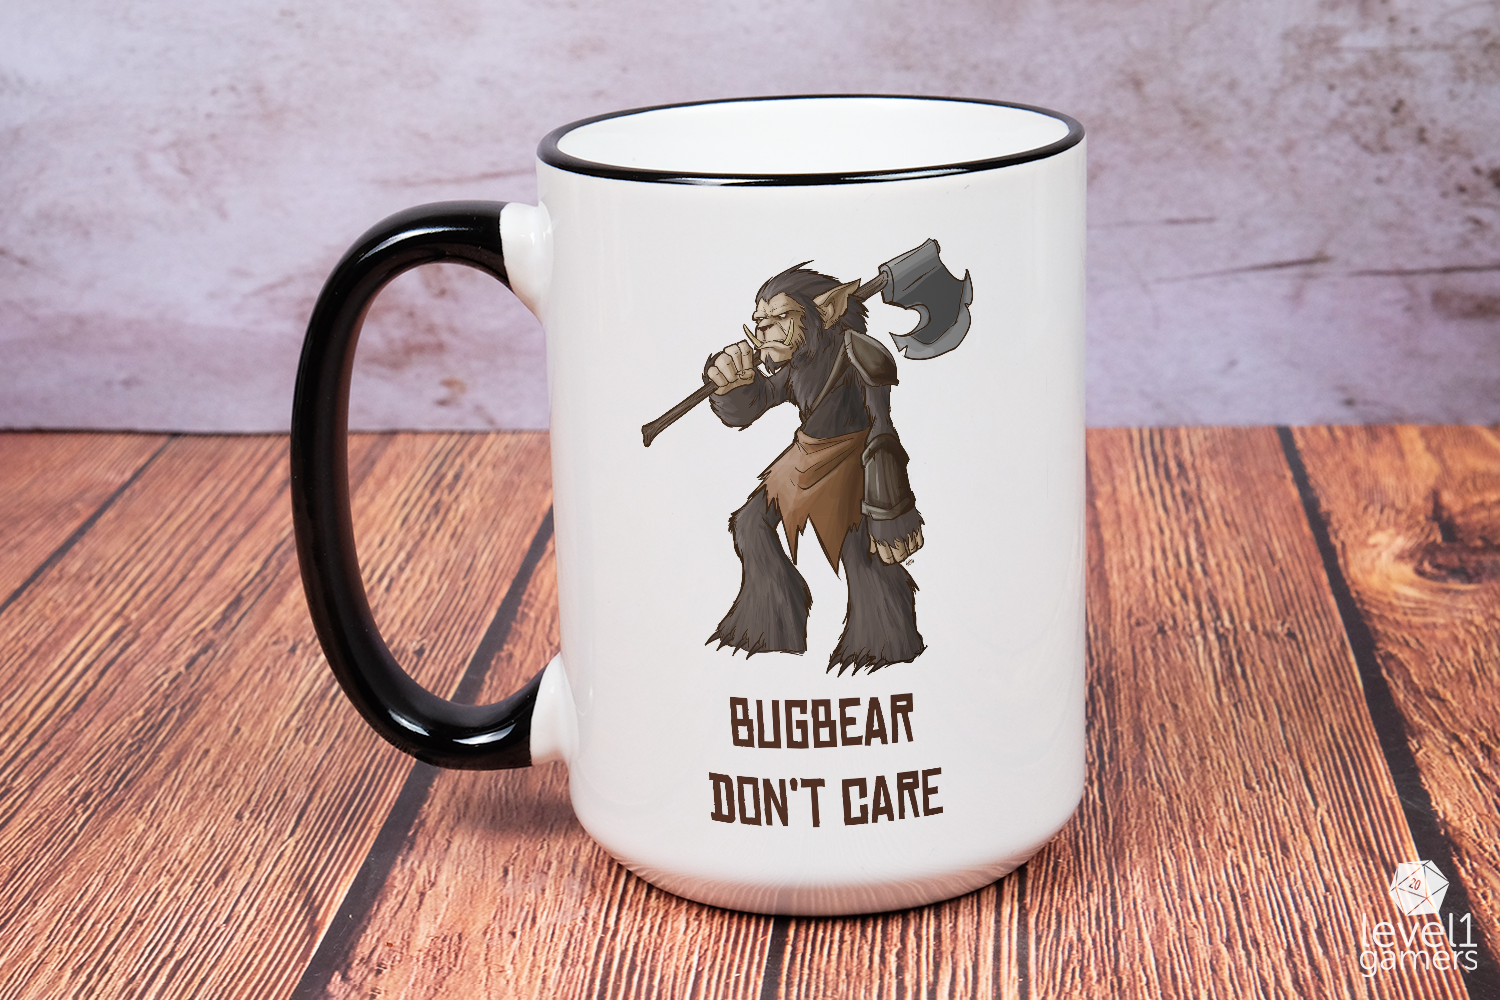 Bugbear Don't Care Mug  Level 1 Gamers   